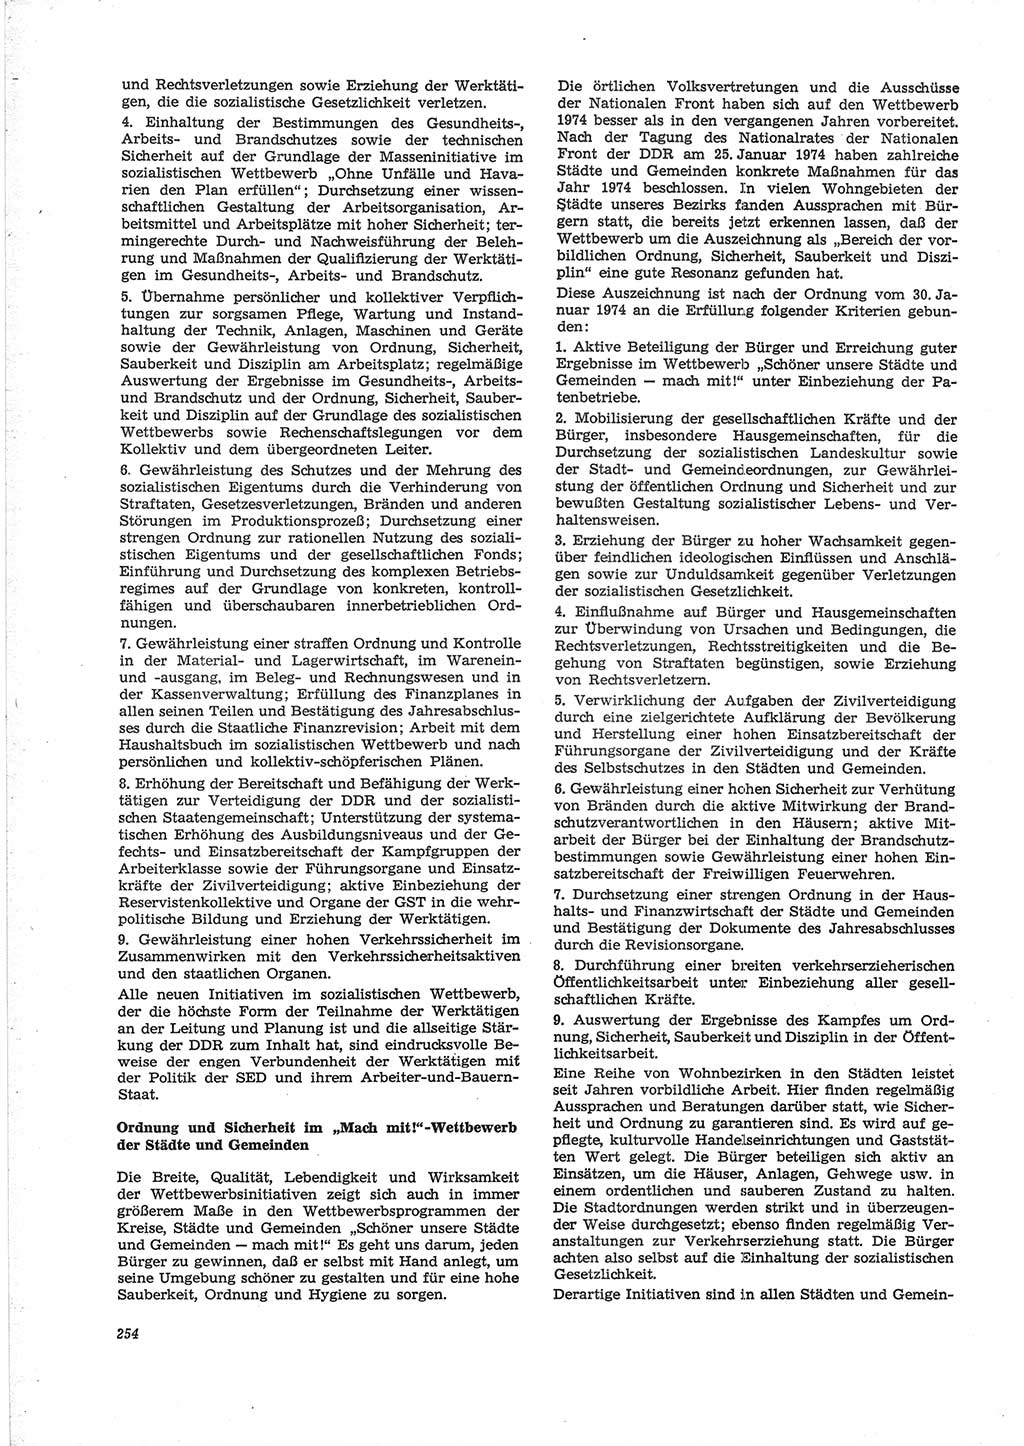 Neue Justiz (NJ), Zeitschrift für Recht und Rechtswissenschaft [Deutsche Demokratische Republik (DDR)], 28. Jahrgang 1974, Seite 254 (NJ DDR 1974, S. 254)